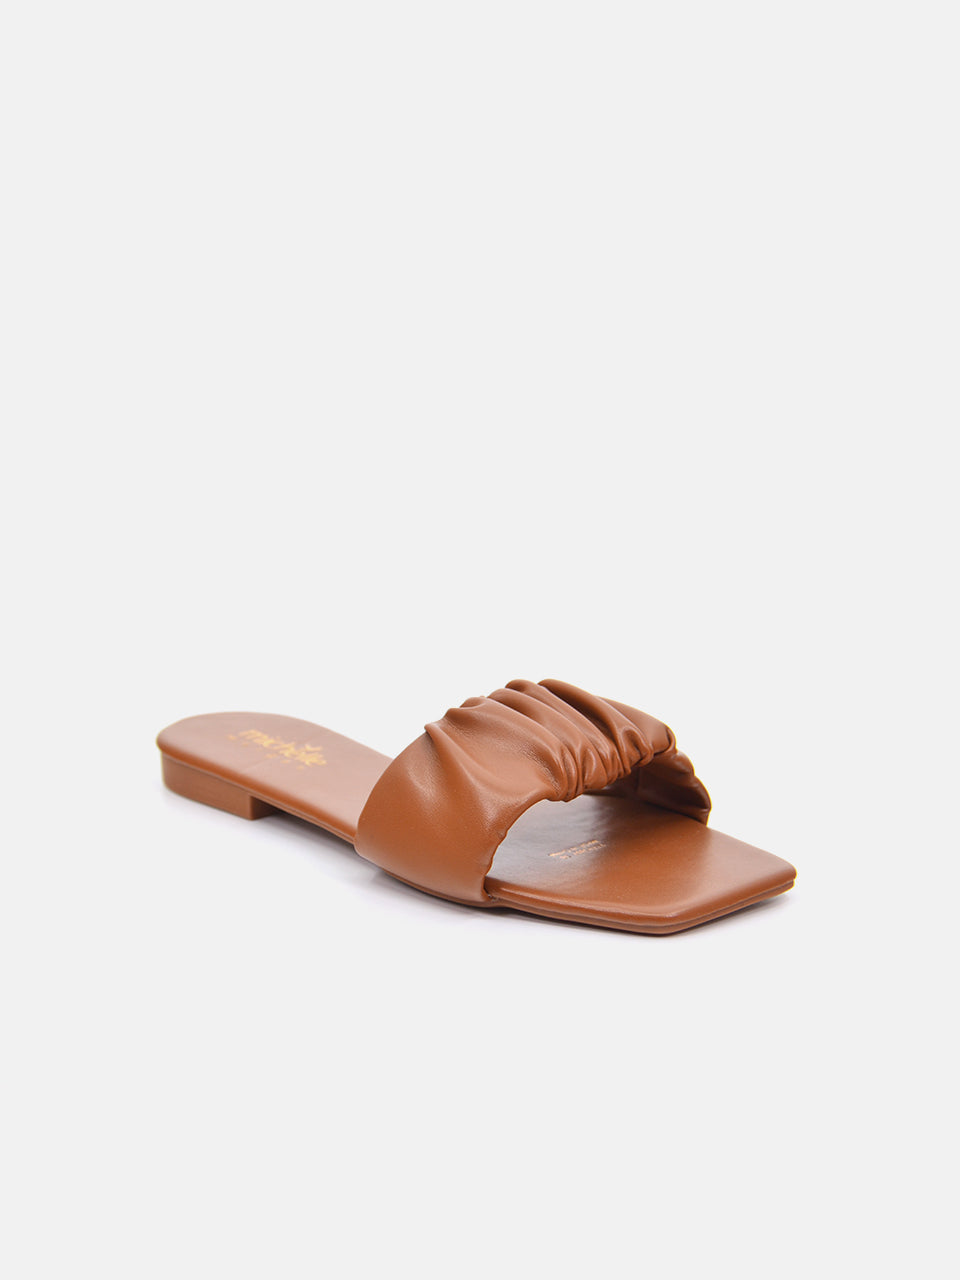 Michelle Morgan 114RJ807 Women's Flat Sandals #color_Brown